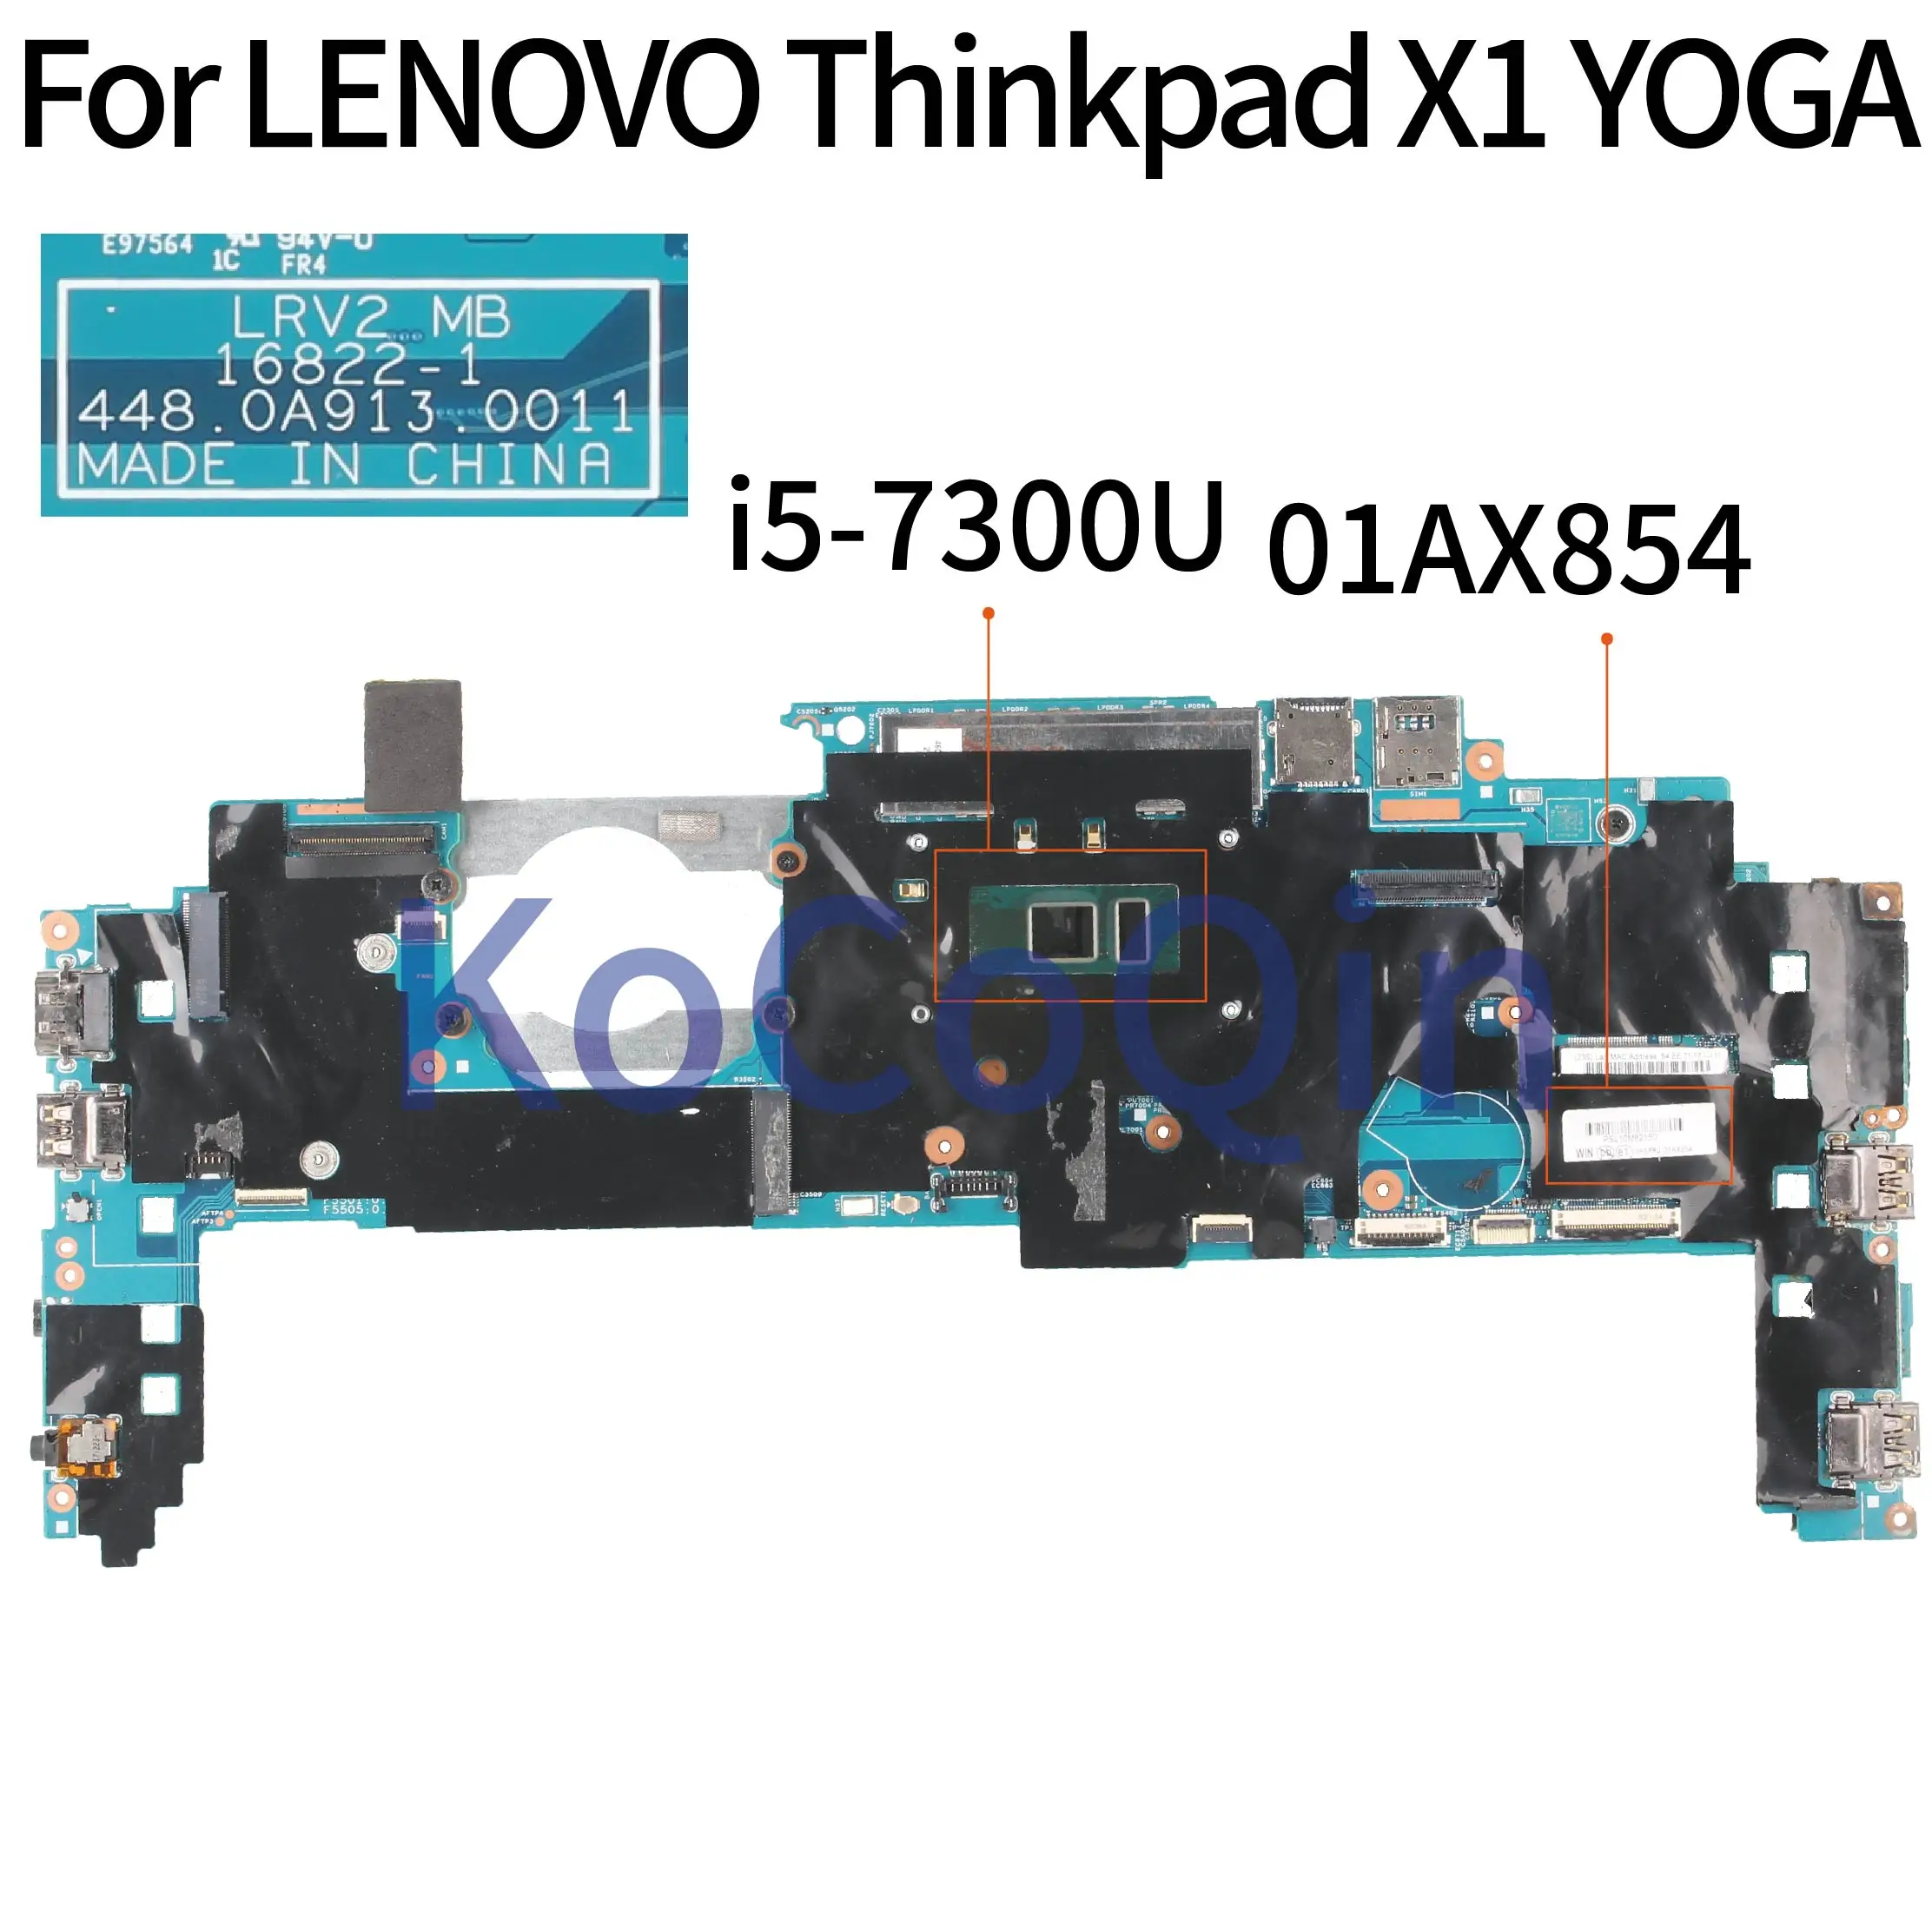 KoCoQin prenosni računalnik z Matično ploščo Za LENOVO Thinkpad X1 JOGA Jedro SR340 I5-7300U 16G Mainboard LRV2 MB 16822-1 448.0A913.0011 01AX854